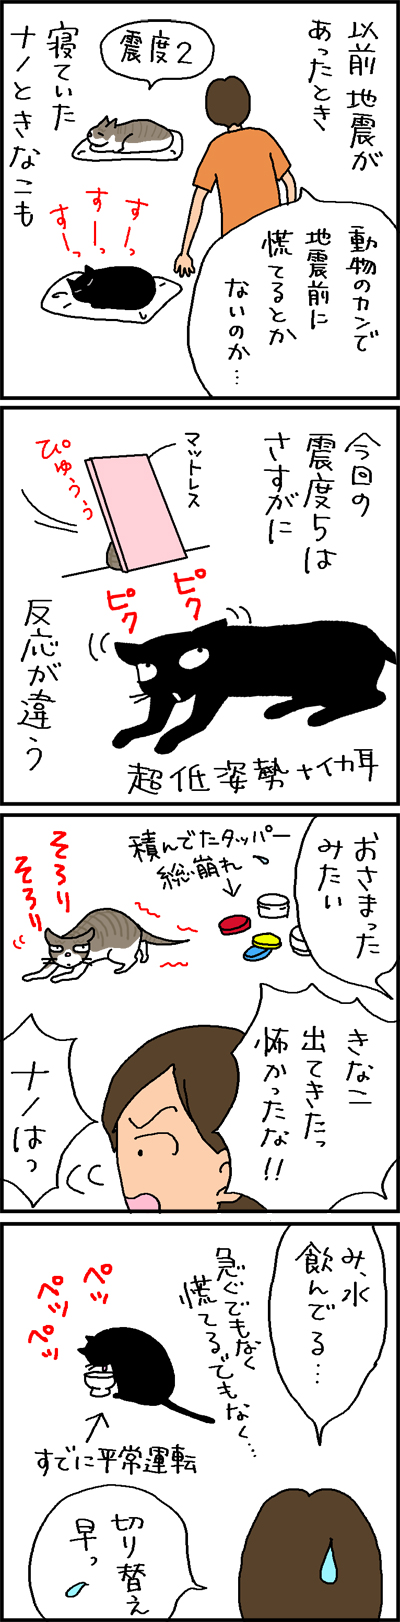 地震と猫の反応の4コマ猫漫画